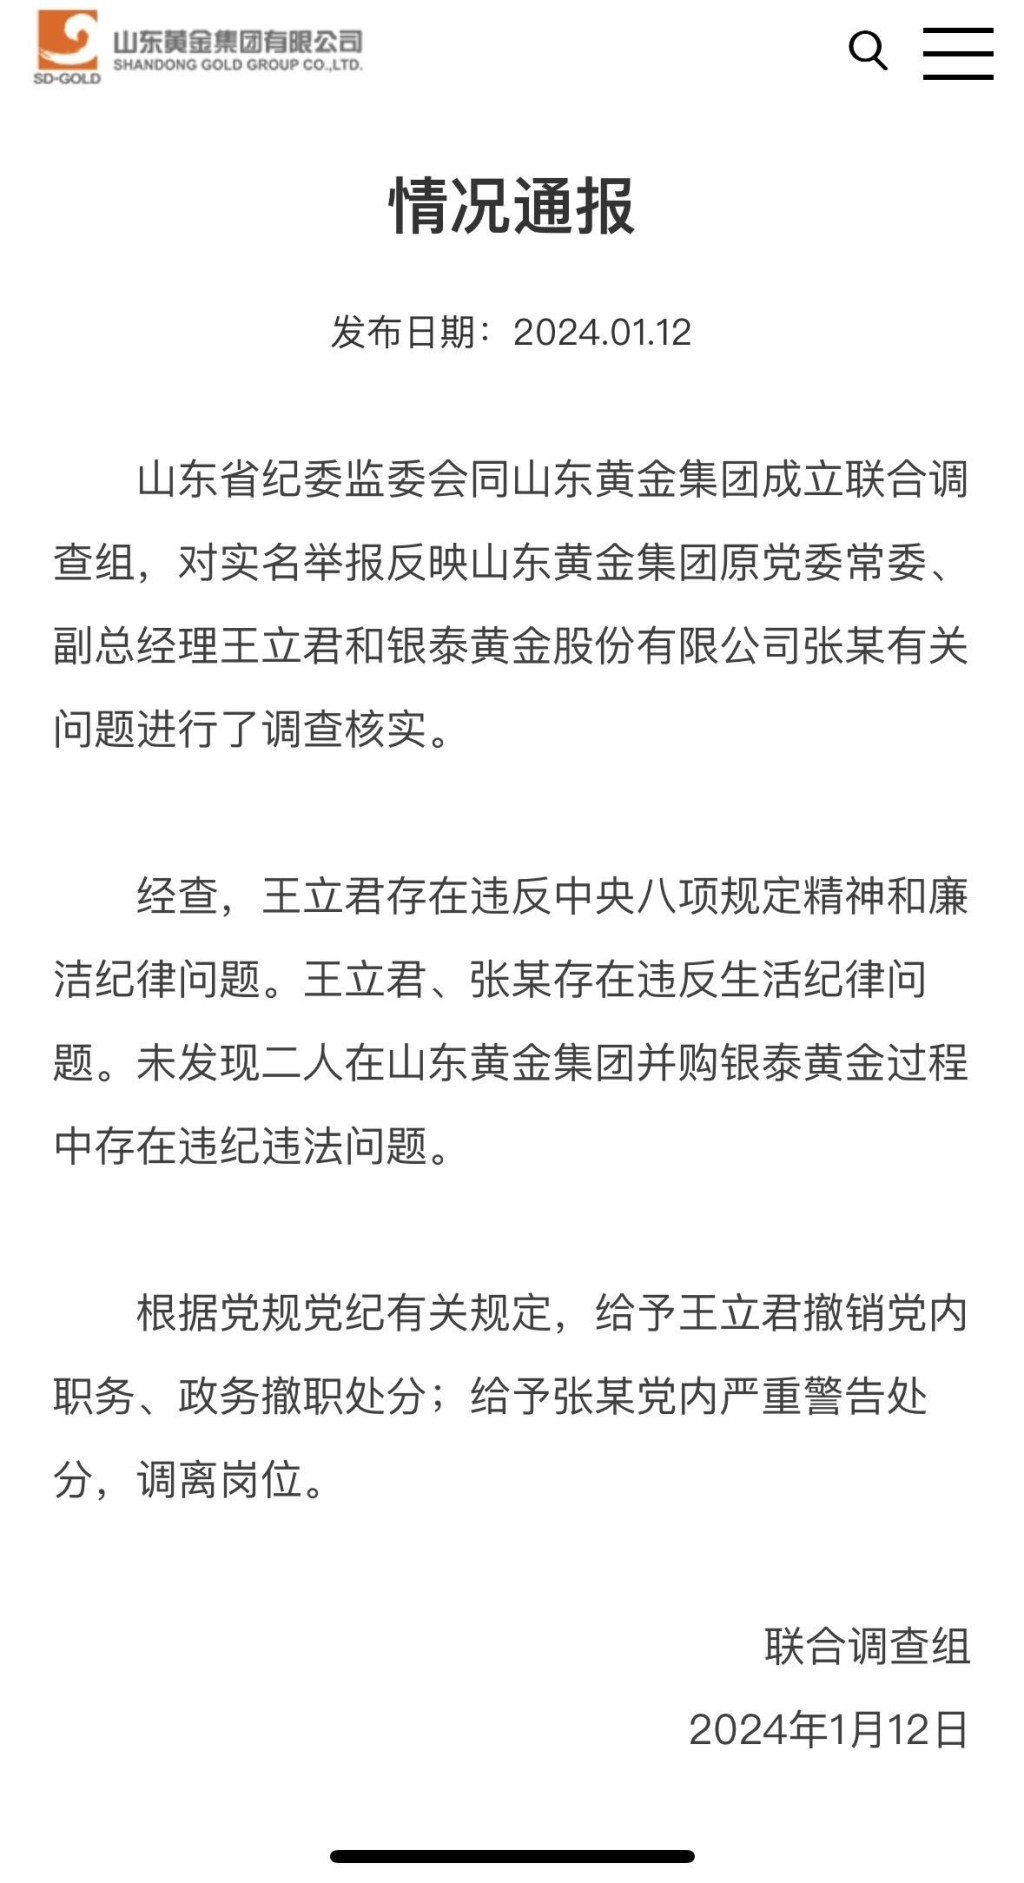 山东黄金集团副总经理王文君遭实名举报与女下属出轨被撤职。网络图片